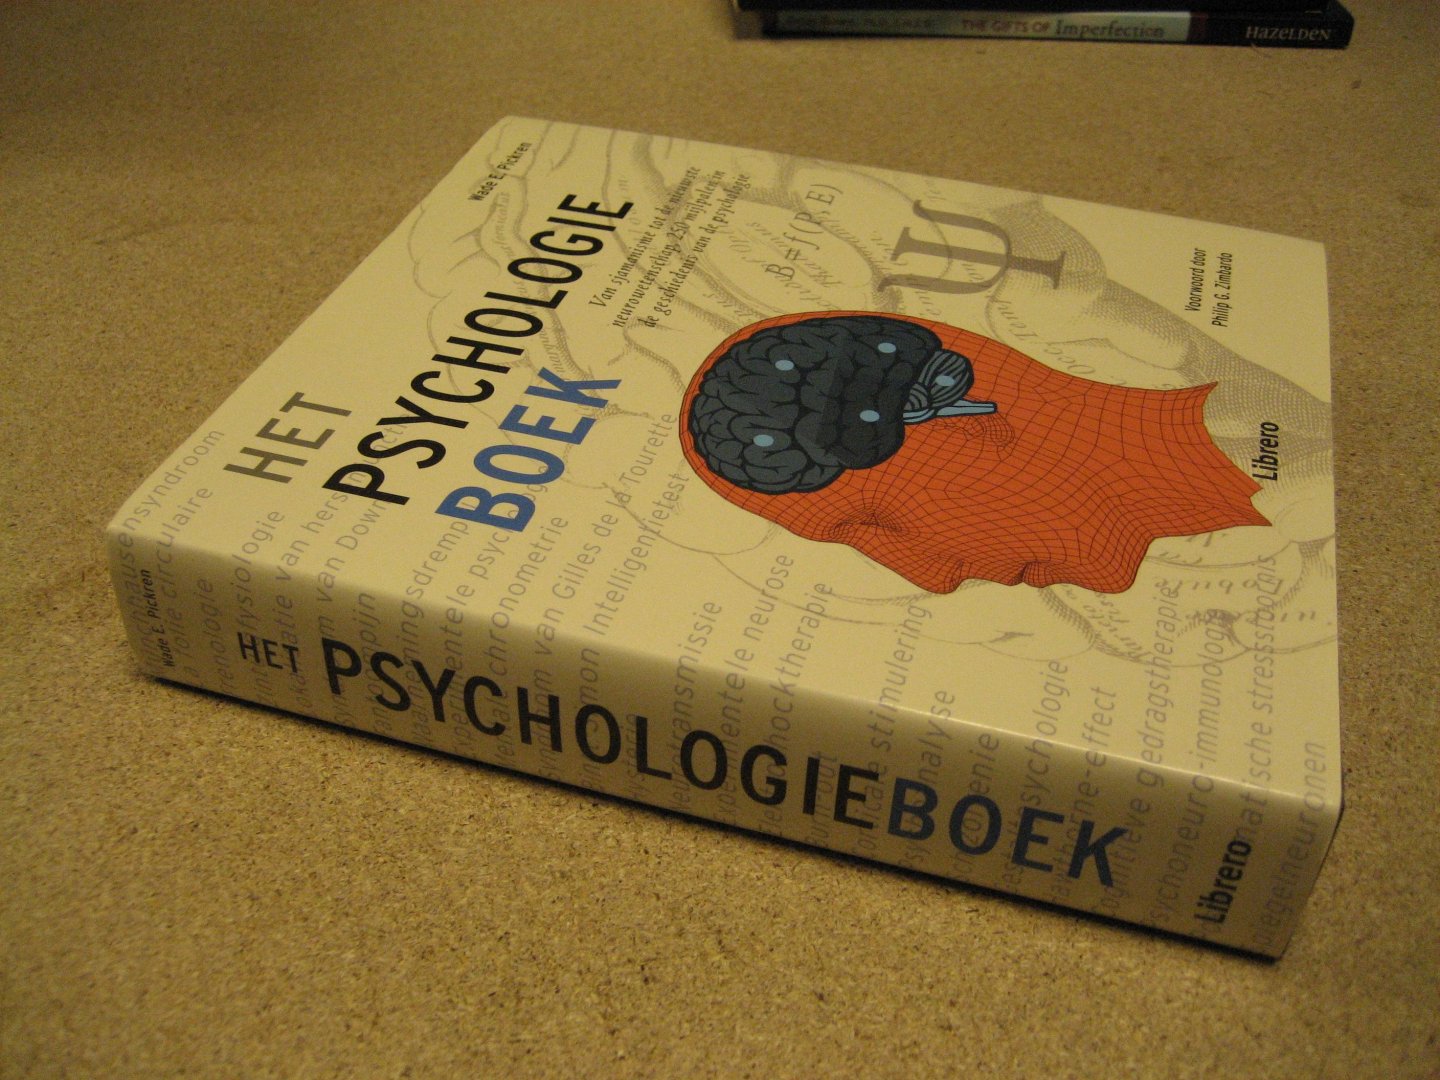 Pickren, Wade E. - Het Psychologieboek. Van sjamanisme tot de nieuwste neurowetenschap, 250 mijlpalen in de geschiedenis van de psychologie